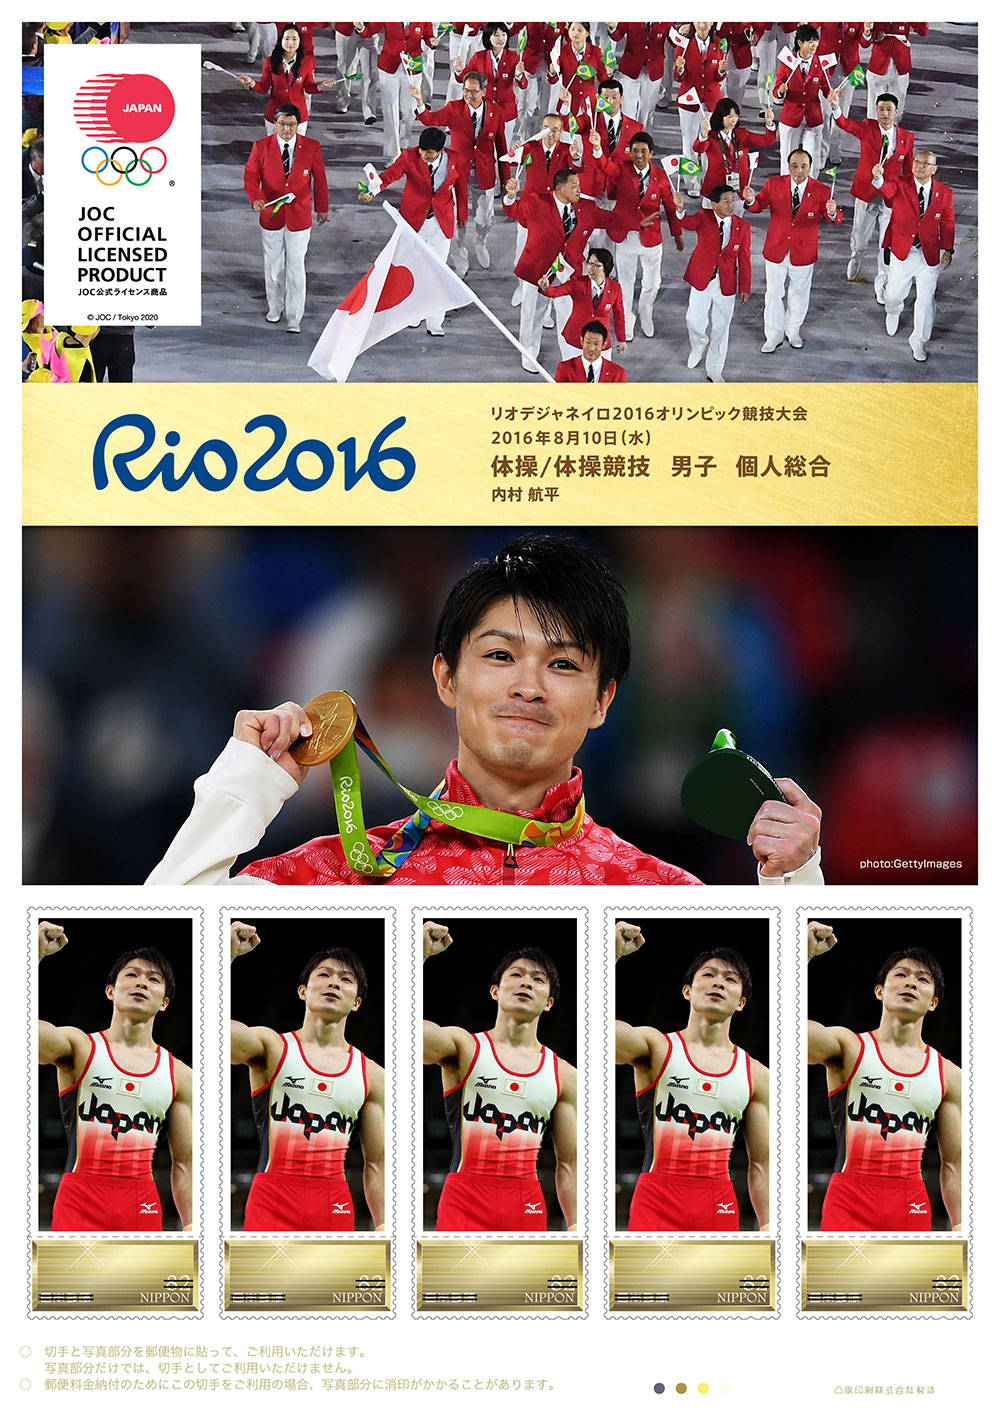 リオデジャネイロ16オリンピック 日本代表選手 金メダリスト公式フレーム切手の販売 日本郵便